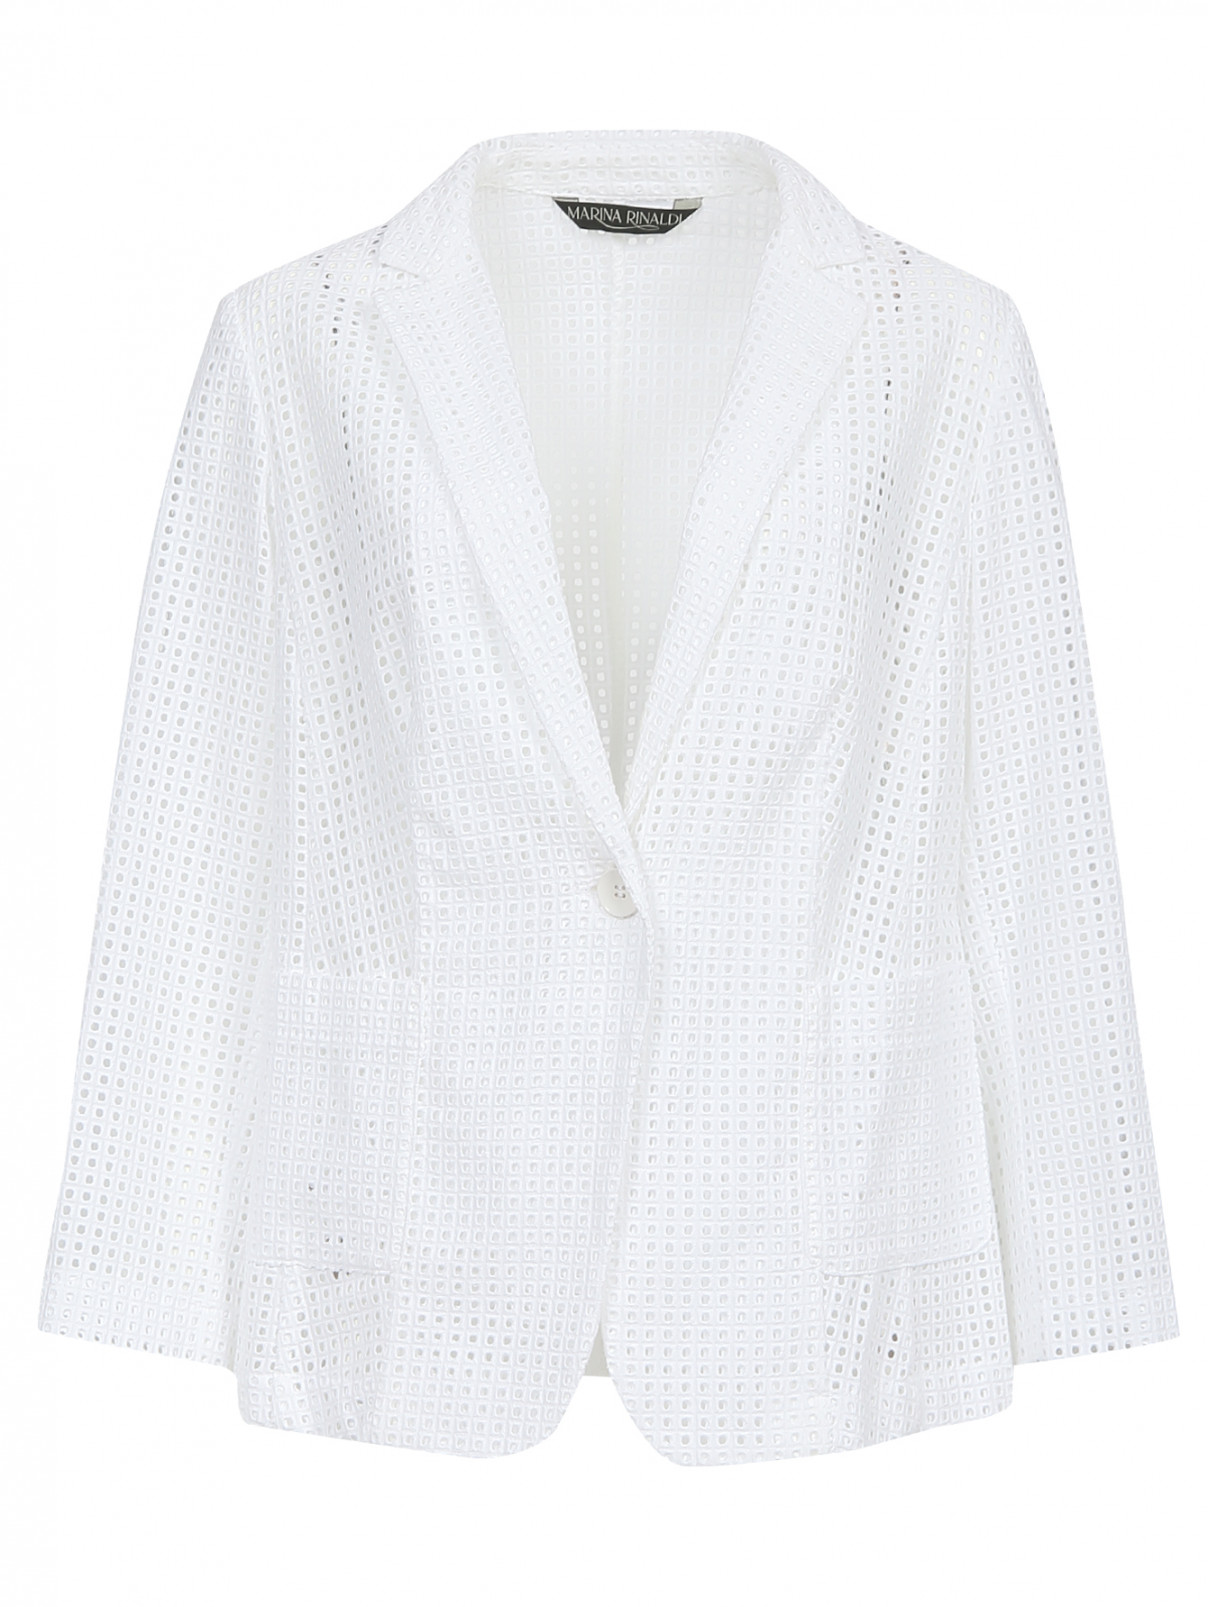 Жакет из хлопка с накладными карманами и вышивкой Marina Rinaldi  –  Общий вид  – Цвет:  Белый